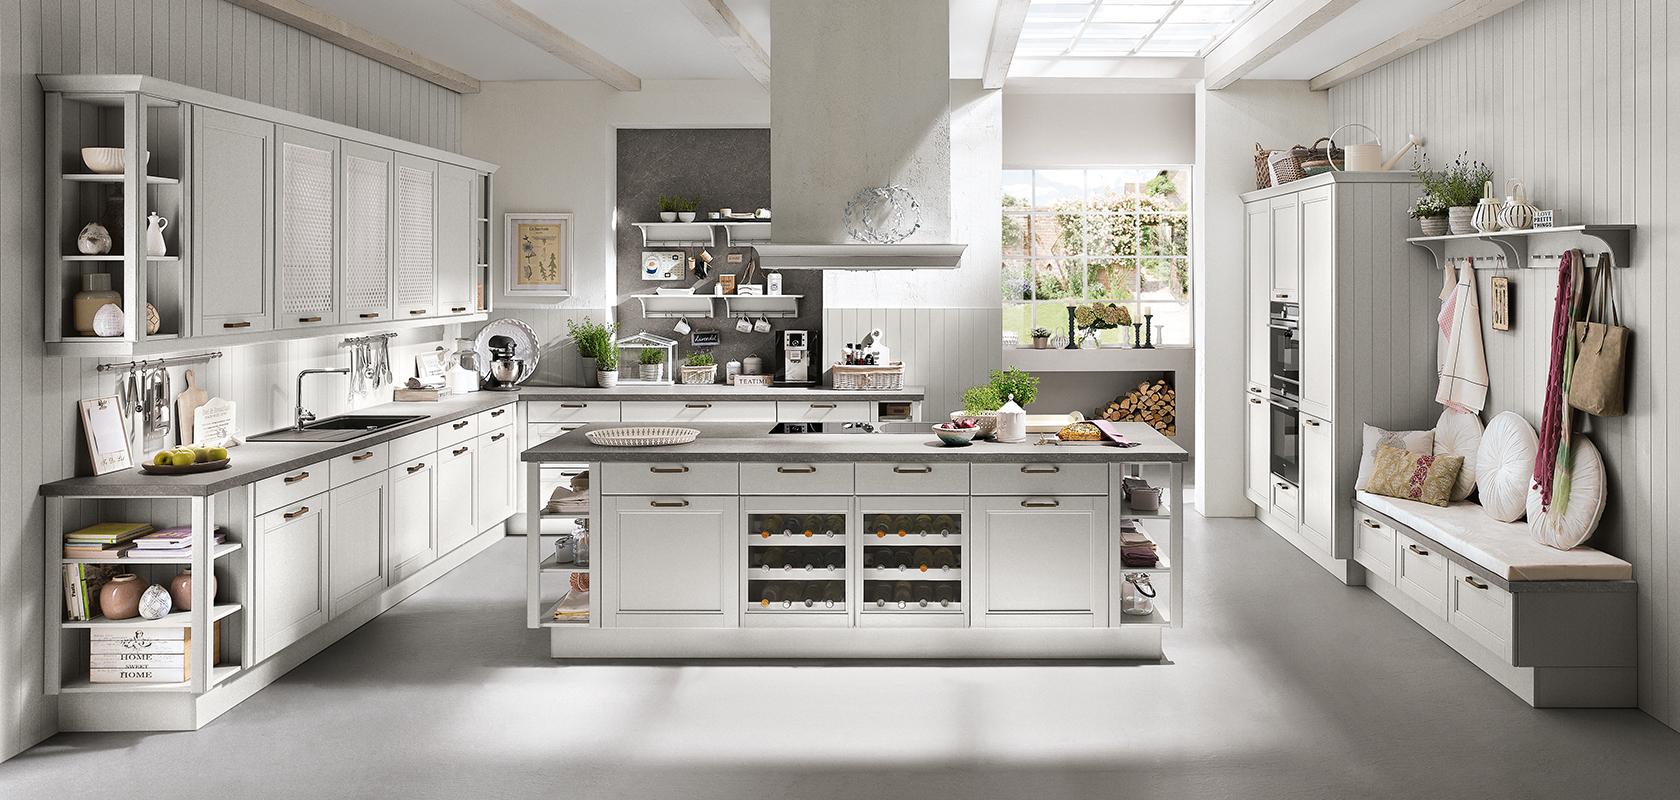 Een heldere, moderne keuken met witte kasten, een centraal eiland en roestvrijstalen apparaten, met een elegante en schone uitstraling.